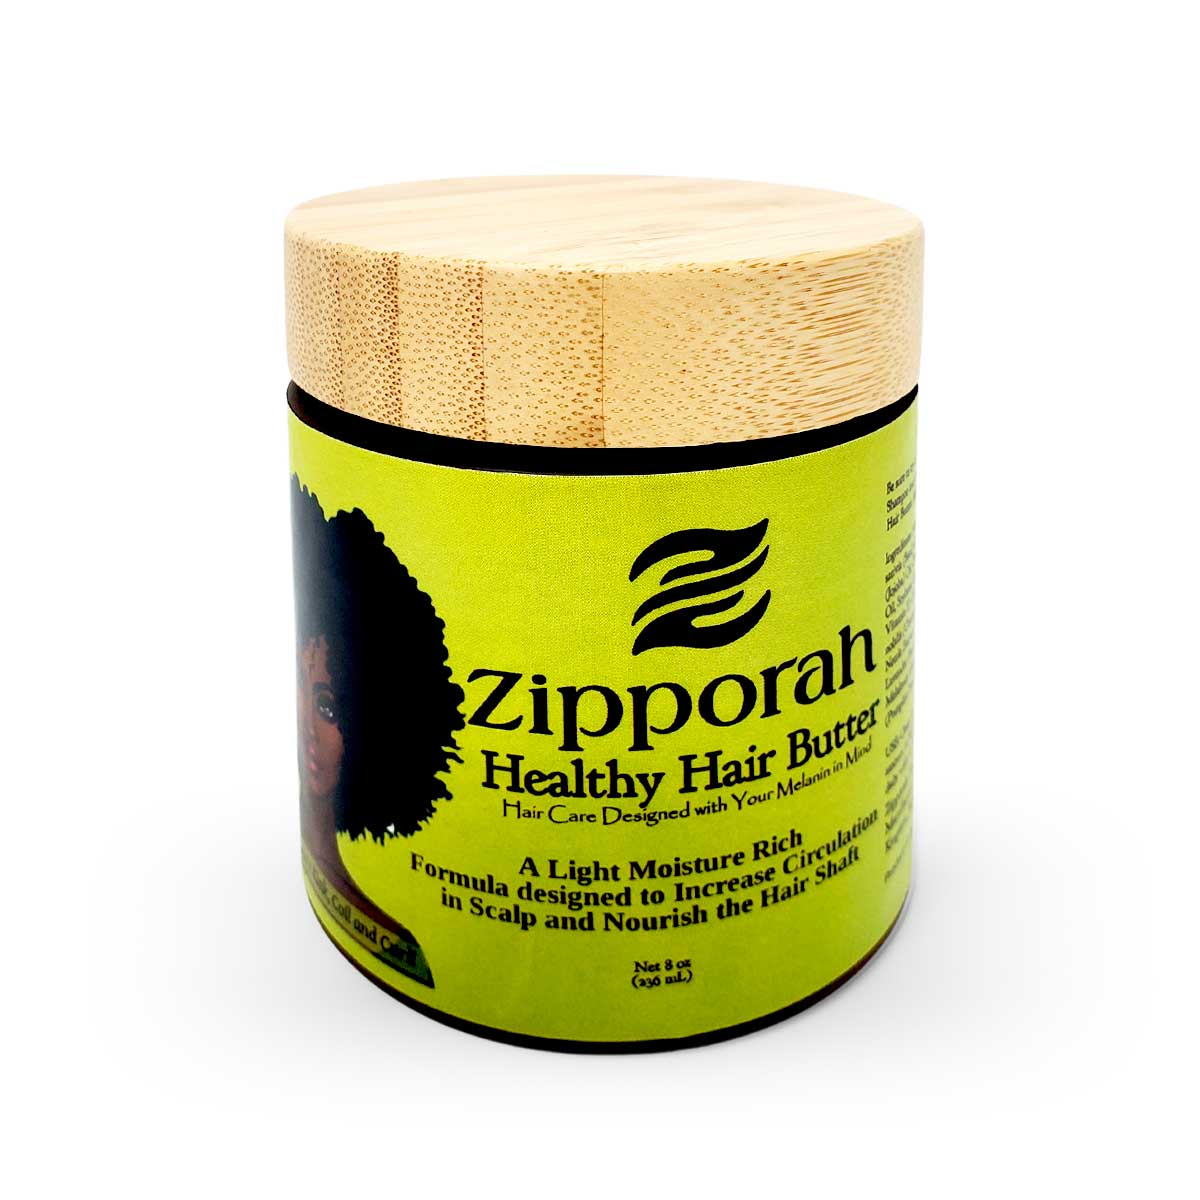 Zipporah Healthy Hair Butter, 8oz